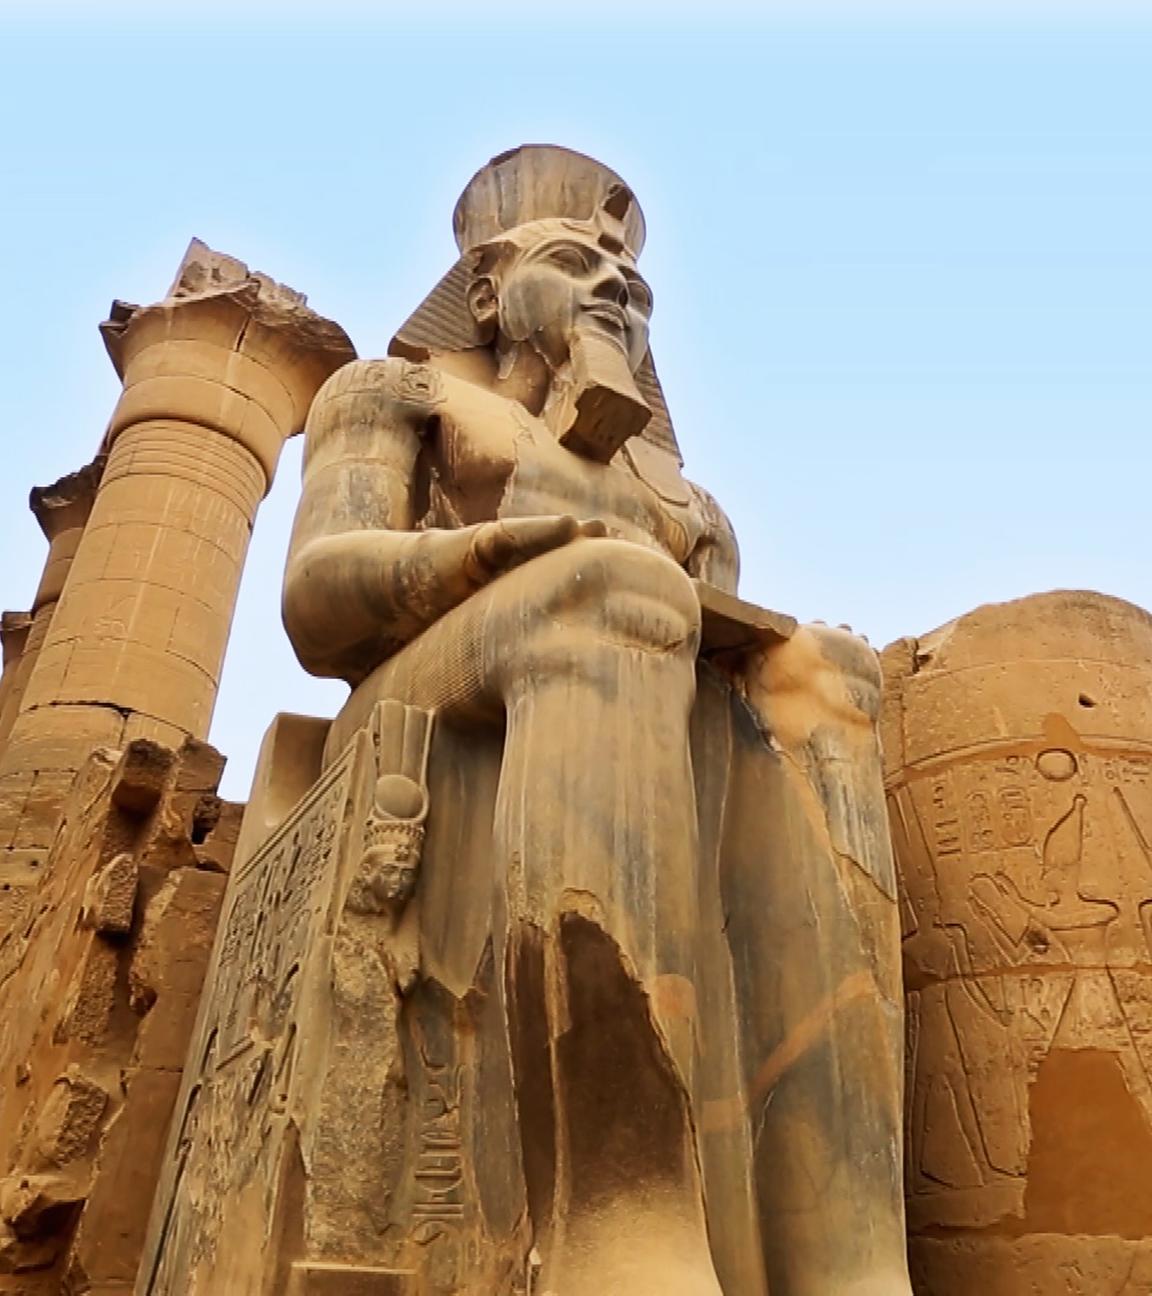 Blick von unten auf eine sitzende Pharaonenstatue: Hände und Unterarme ruhen auf den Oberschenkeln. Auf dem Kopf der Statue ist ein Nemes-Kopftuch mit Uräusschlange, darüber die altägyptische Doppelkrone. Am Kinn trägt die Statue einen Königsbart. Hinter der Statue befindet sich eine Säule mit Hieroglyphen und beschädigtem Kapitell. Im Hintergrund ist blauer Himmel.